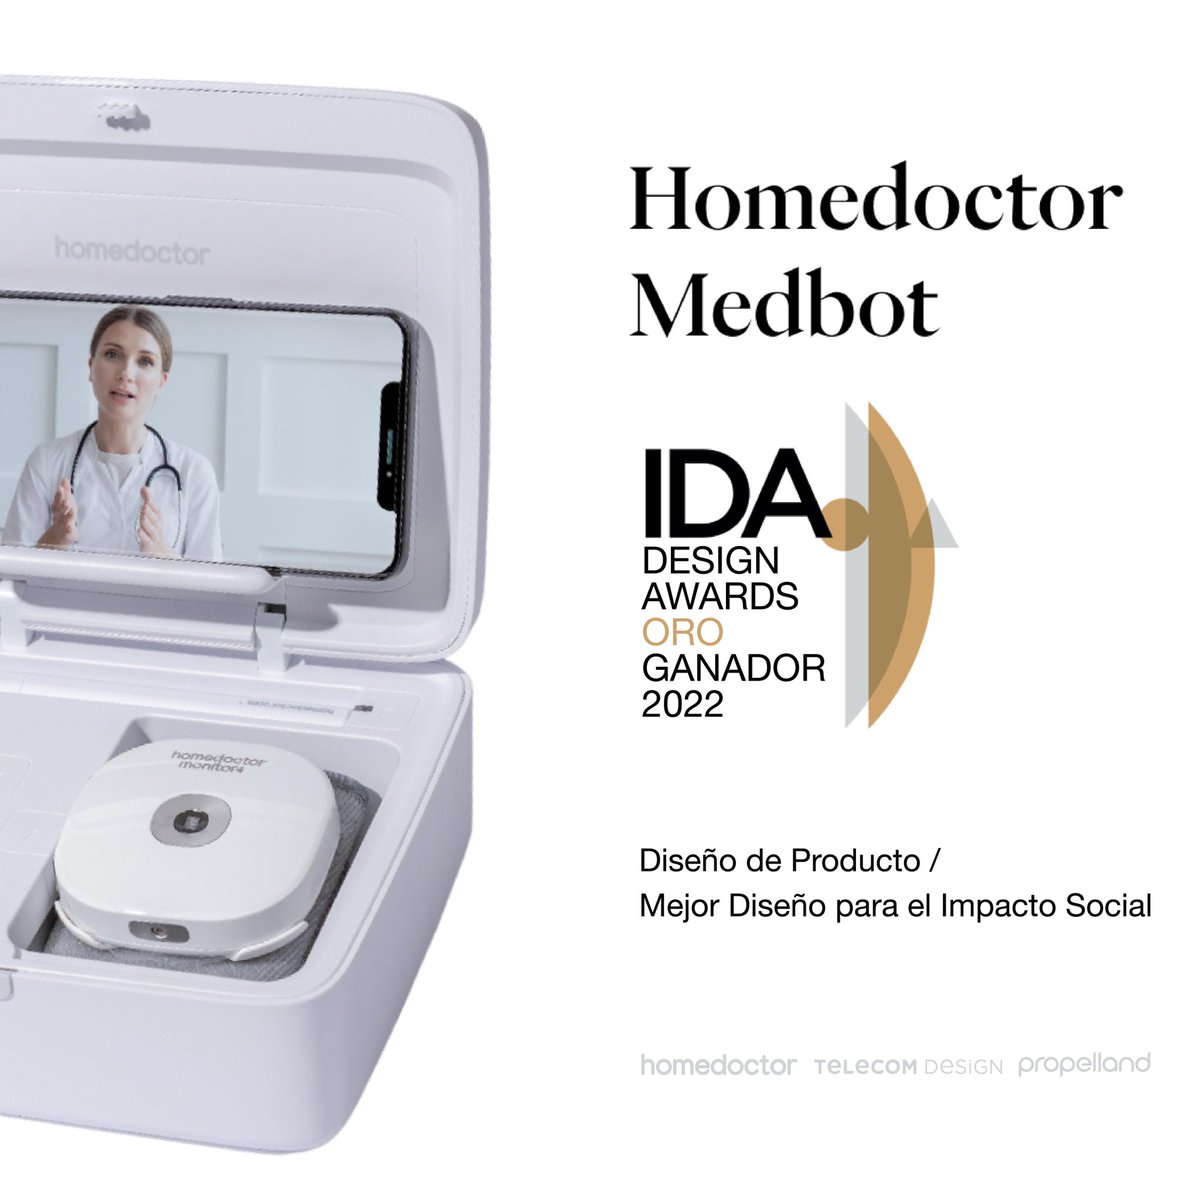 Estamos muy felices de anunciar que nuestro Homedoctor Medbot ha sido galardonado con un premio IDA GOLD al Mejor Diseño para el Impacto Social en los International Design Awards @iDesignAwards 👏🥇

Gracias @propelland y Telecom Design. Juntos hemos lo hecho posible💙

#IDA2022